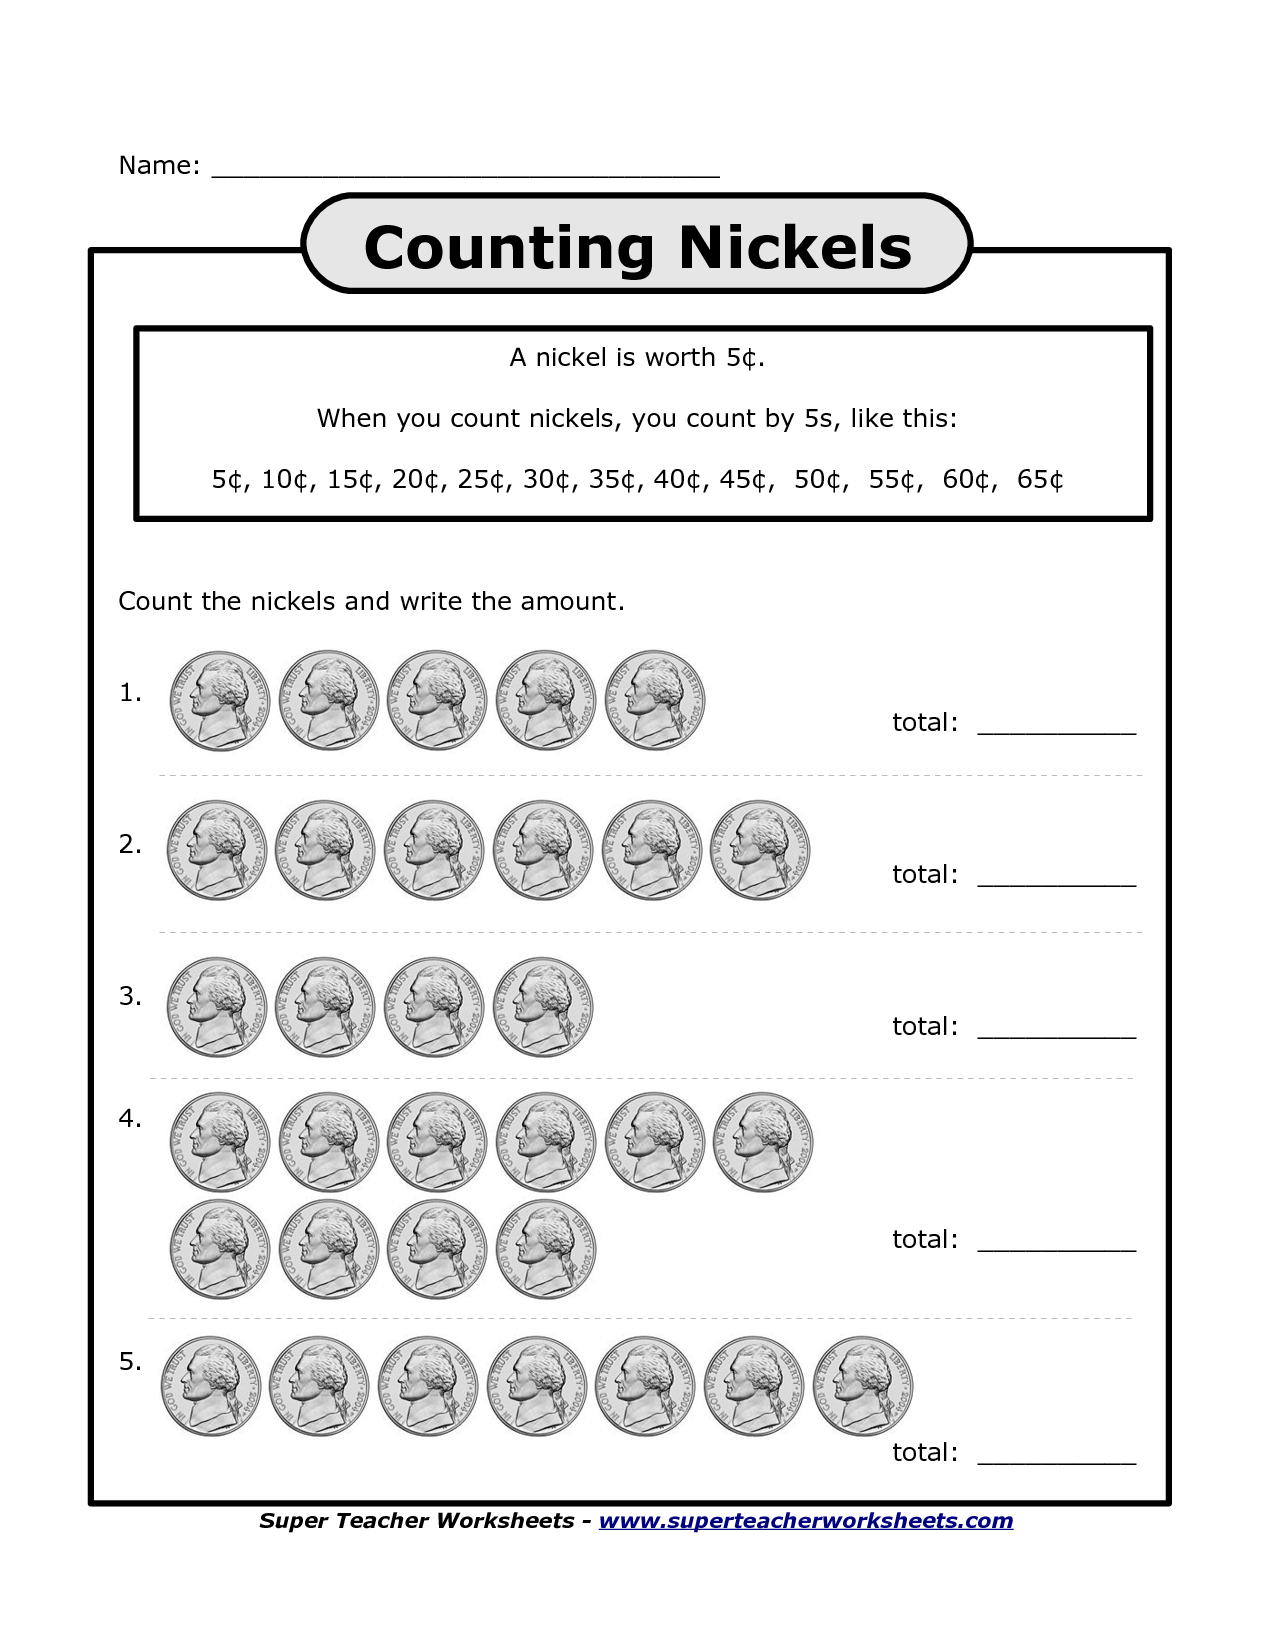 Free Printable Counting Nickels Worksheets